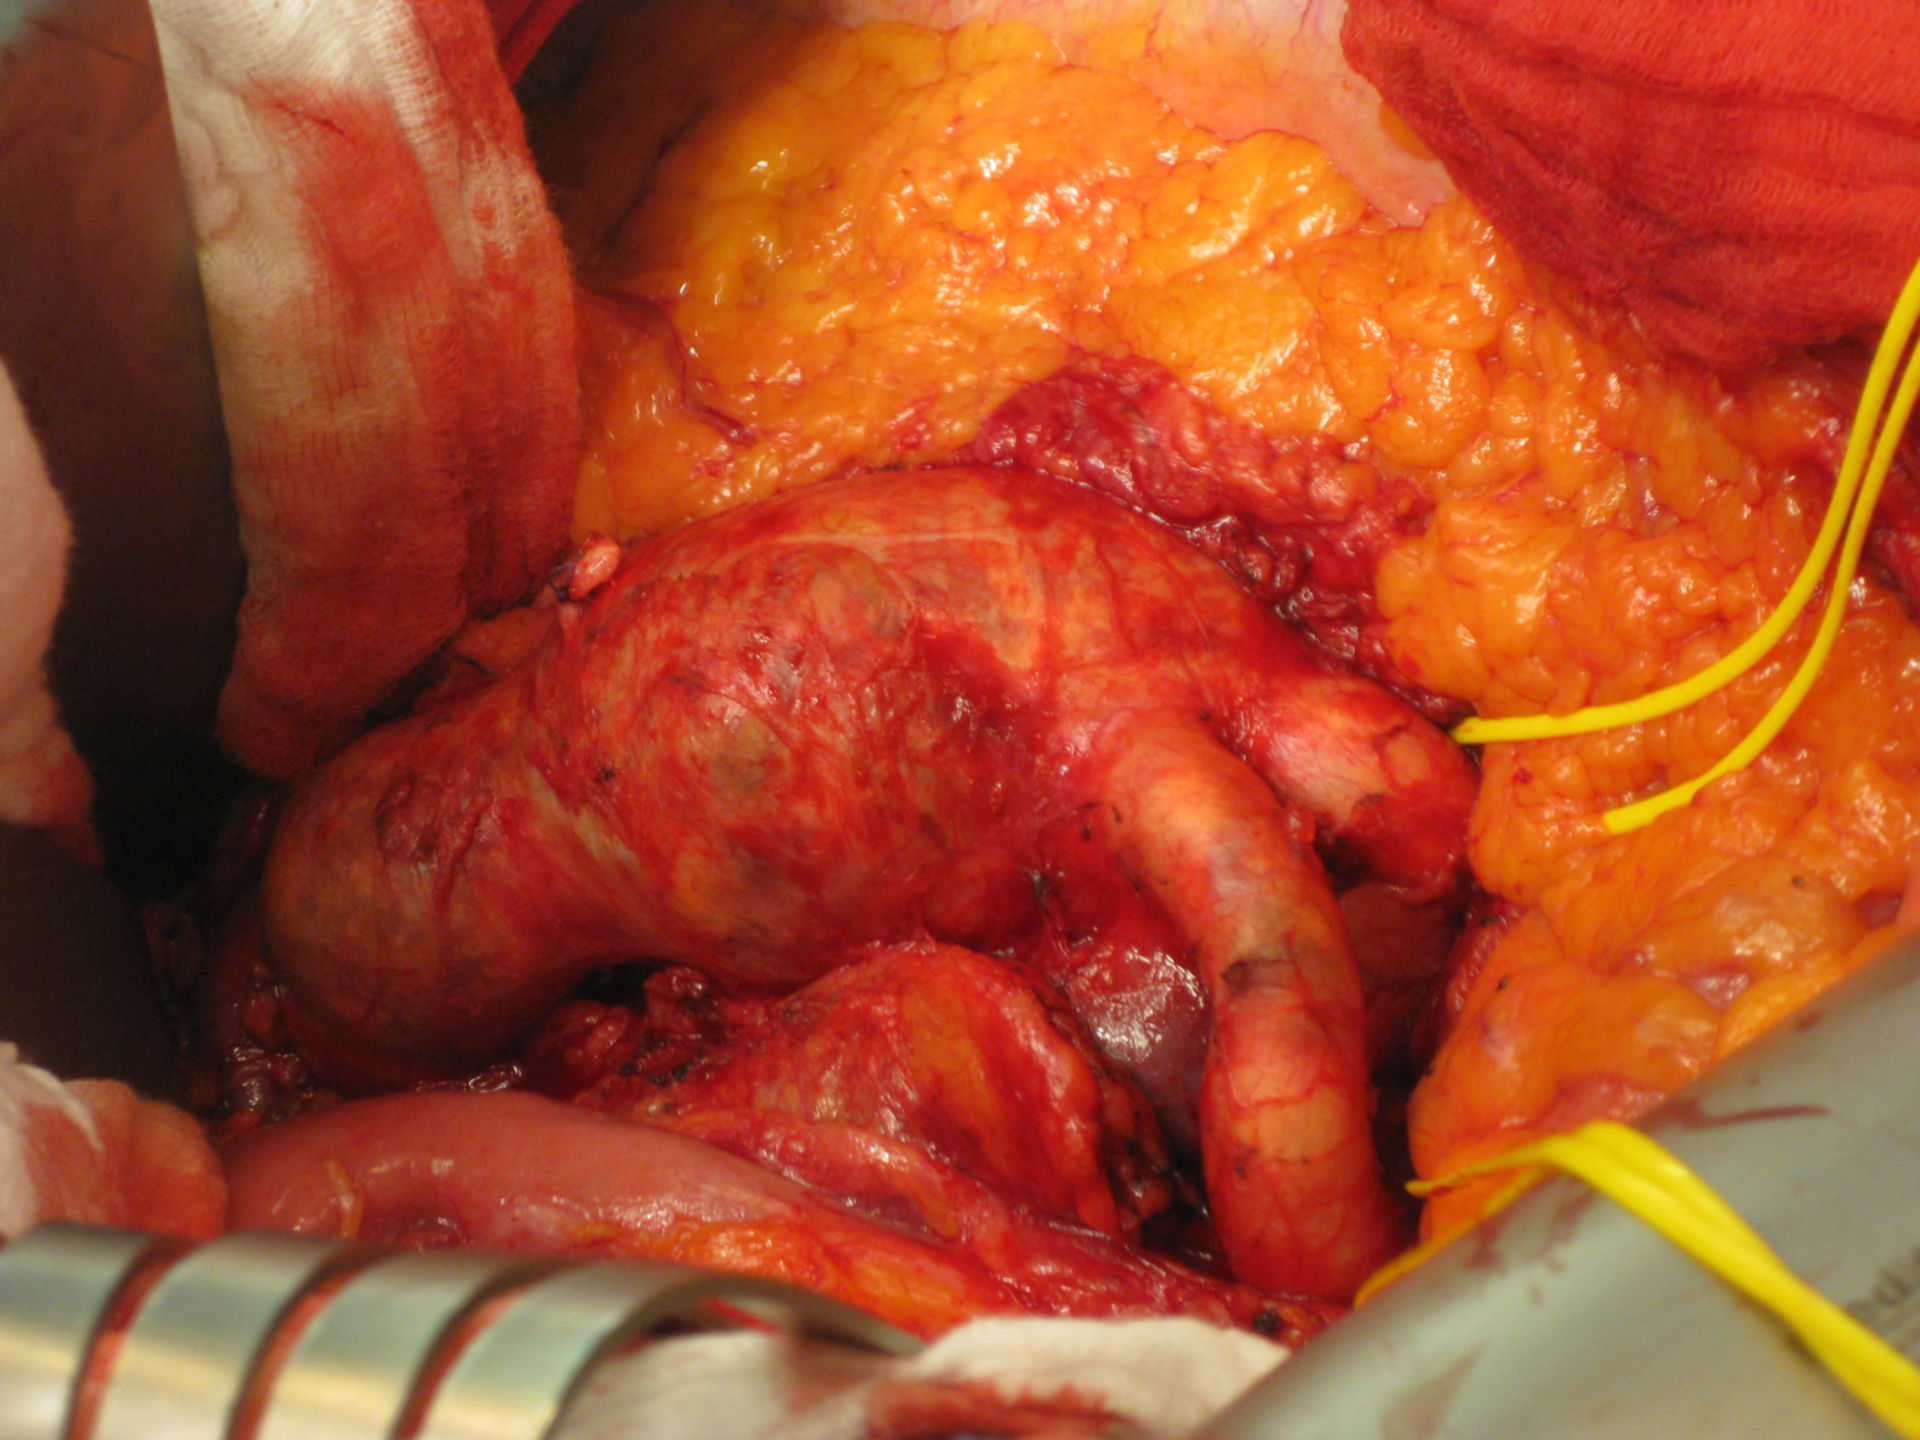 Aneurisma de la aorta abdominal (infrarenal)